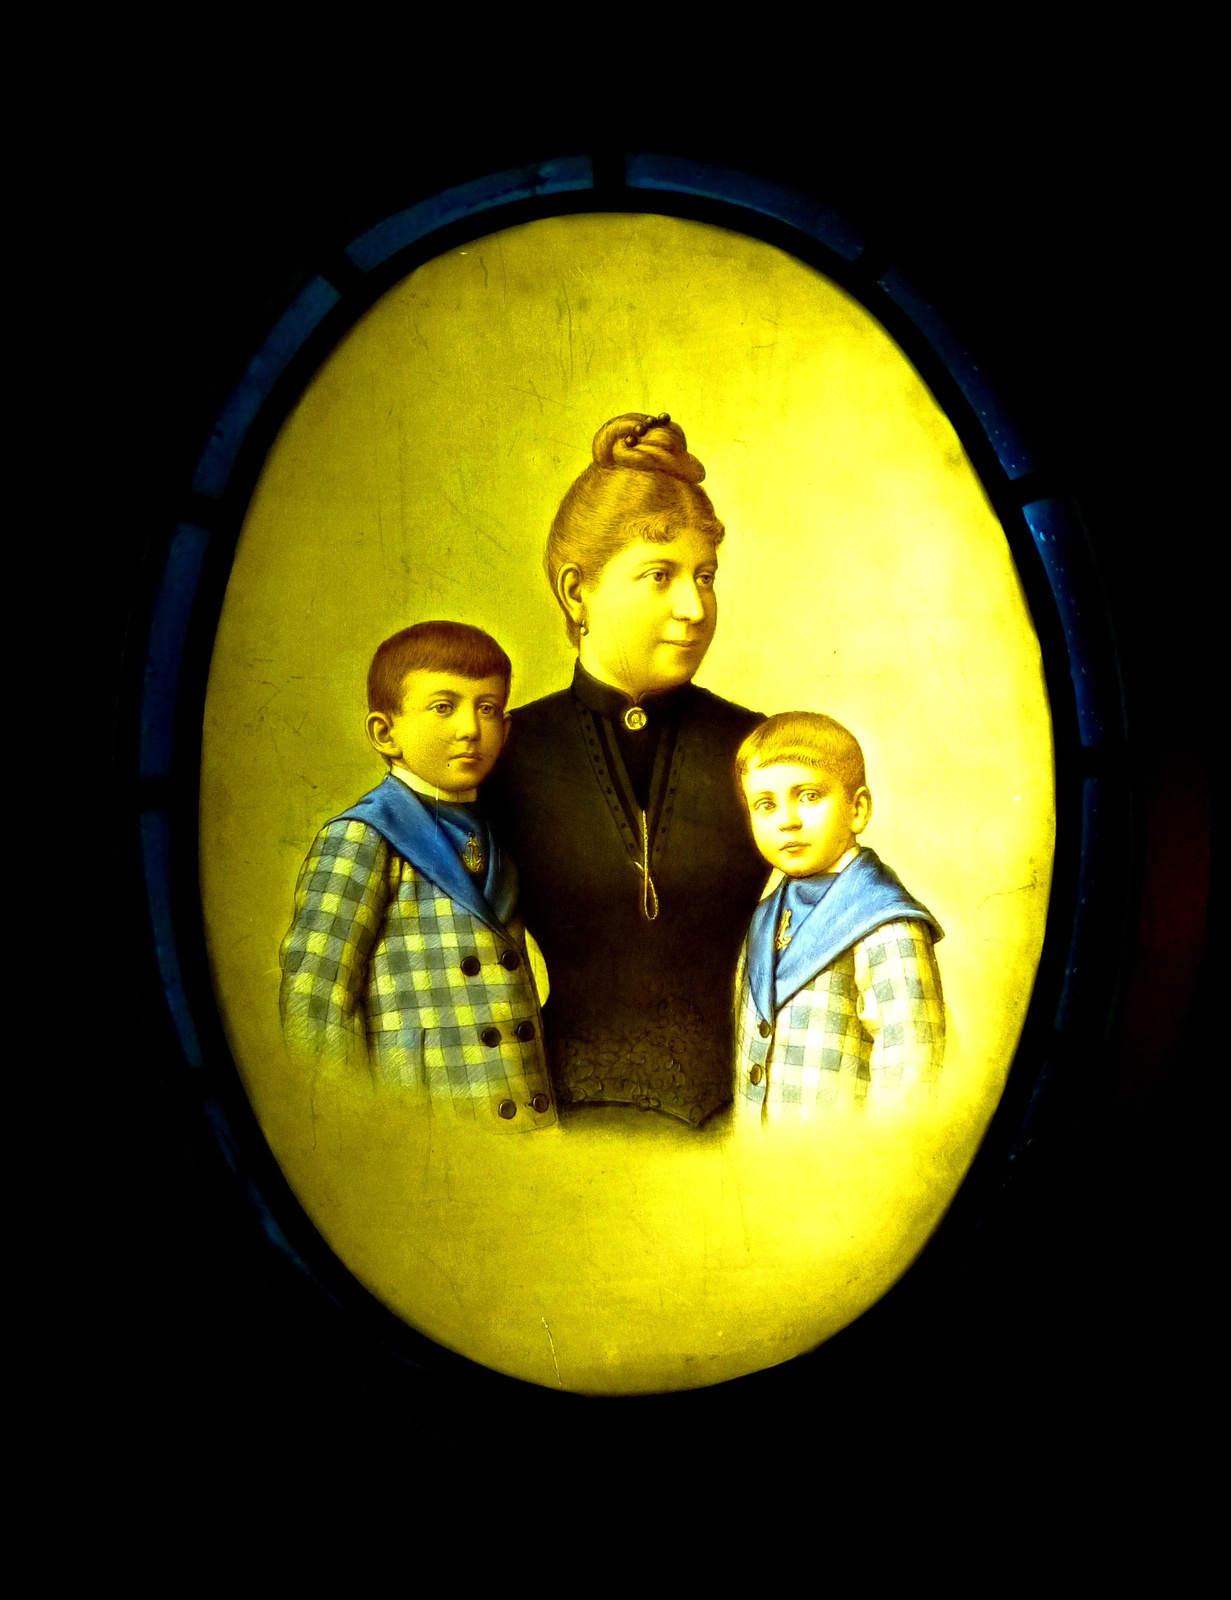 Polgárasszony gyermekeivel - 1885.